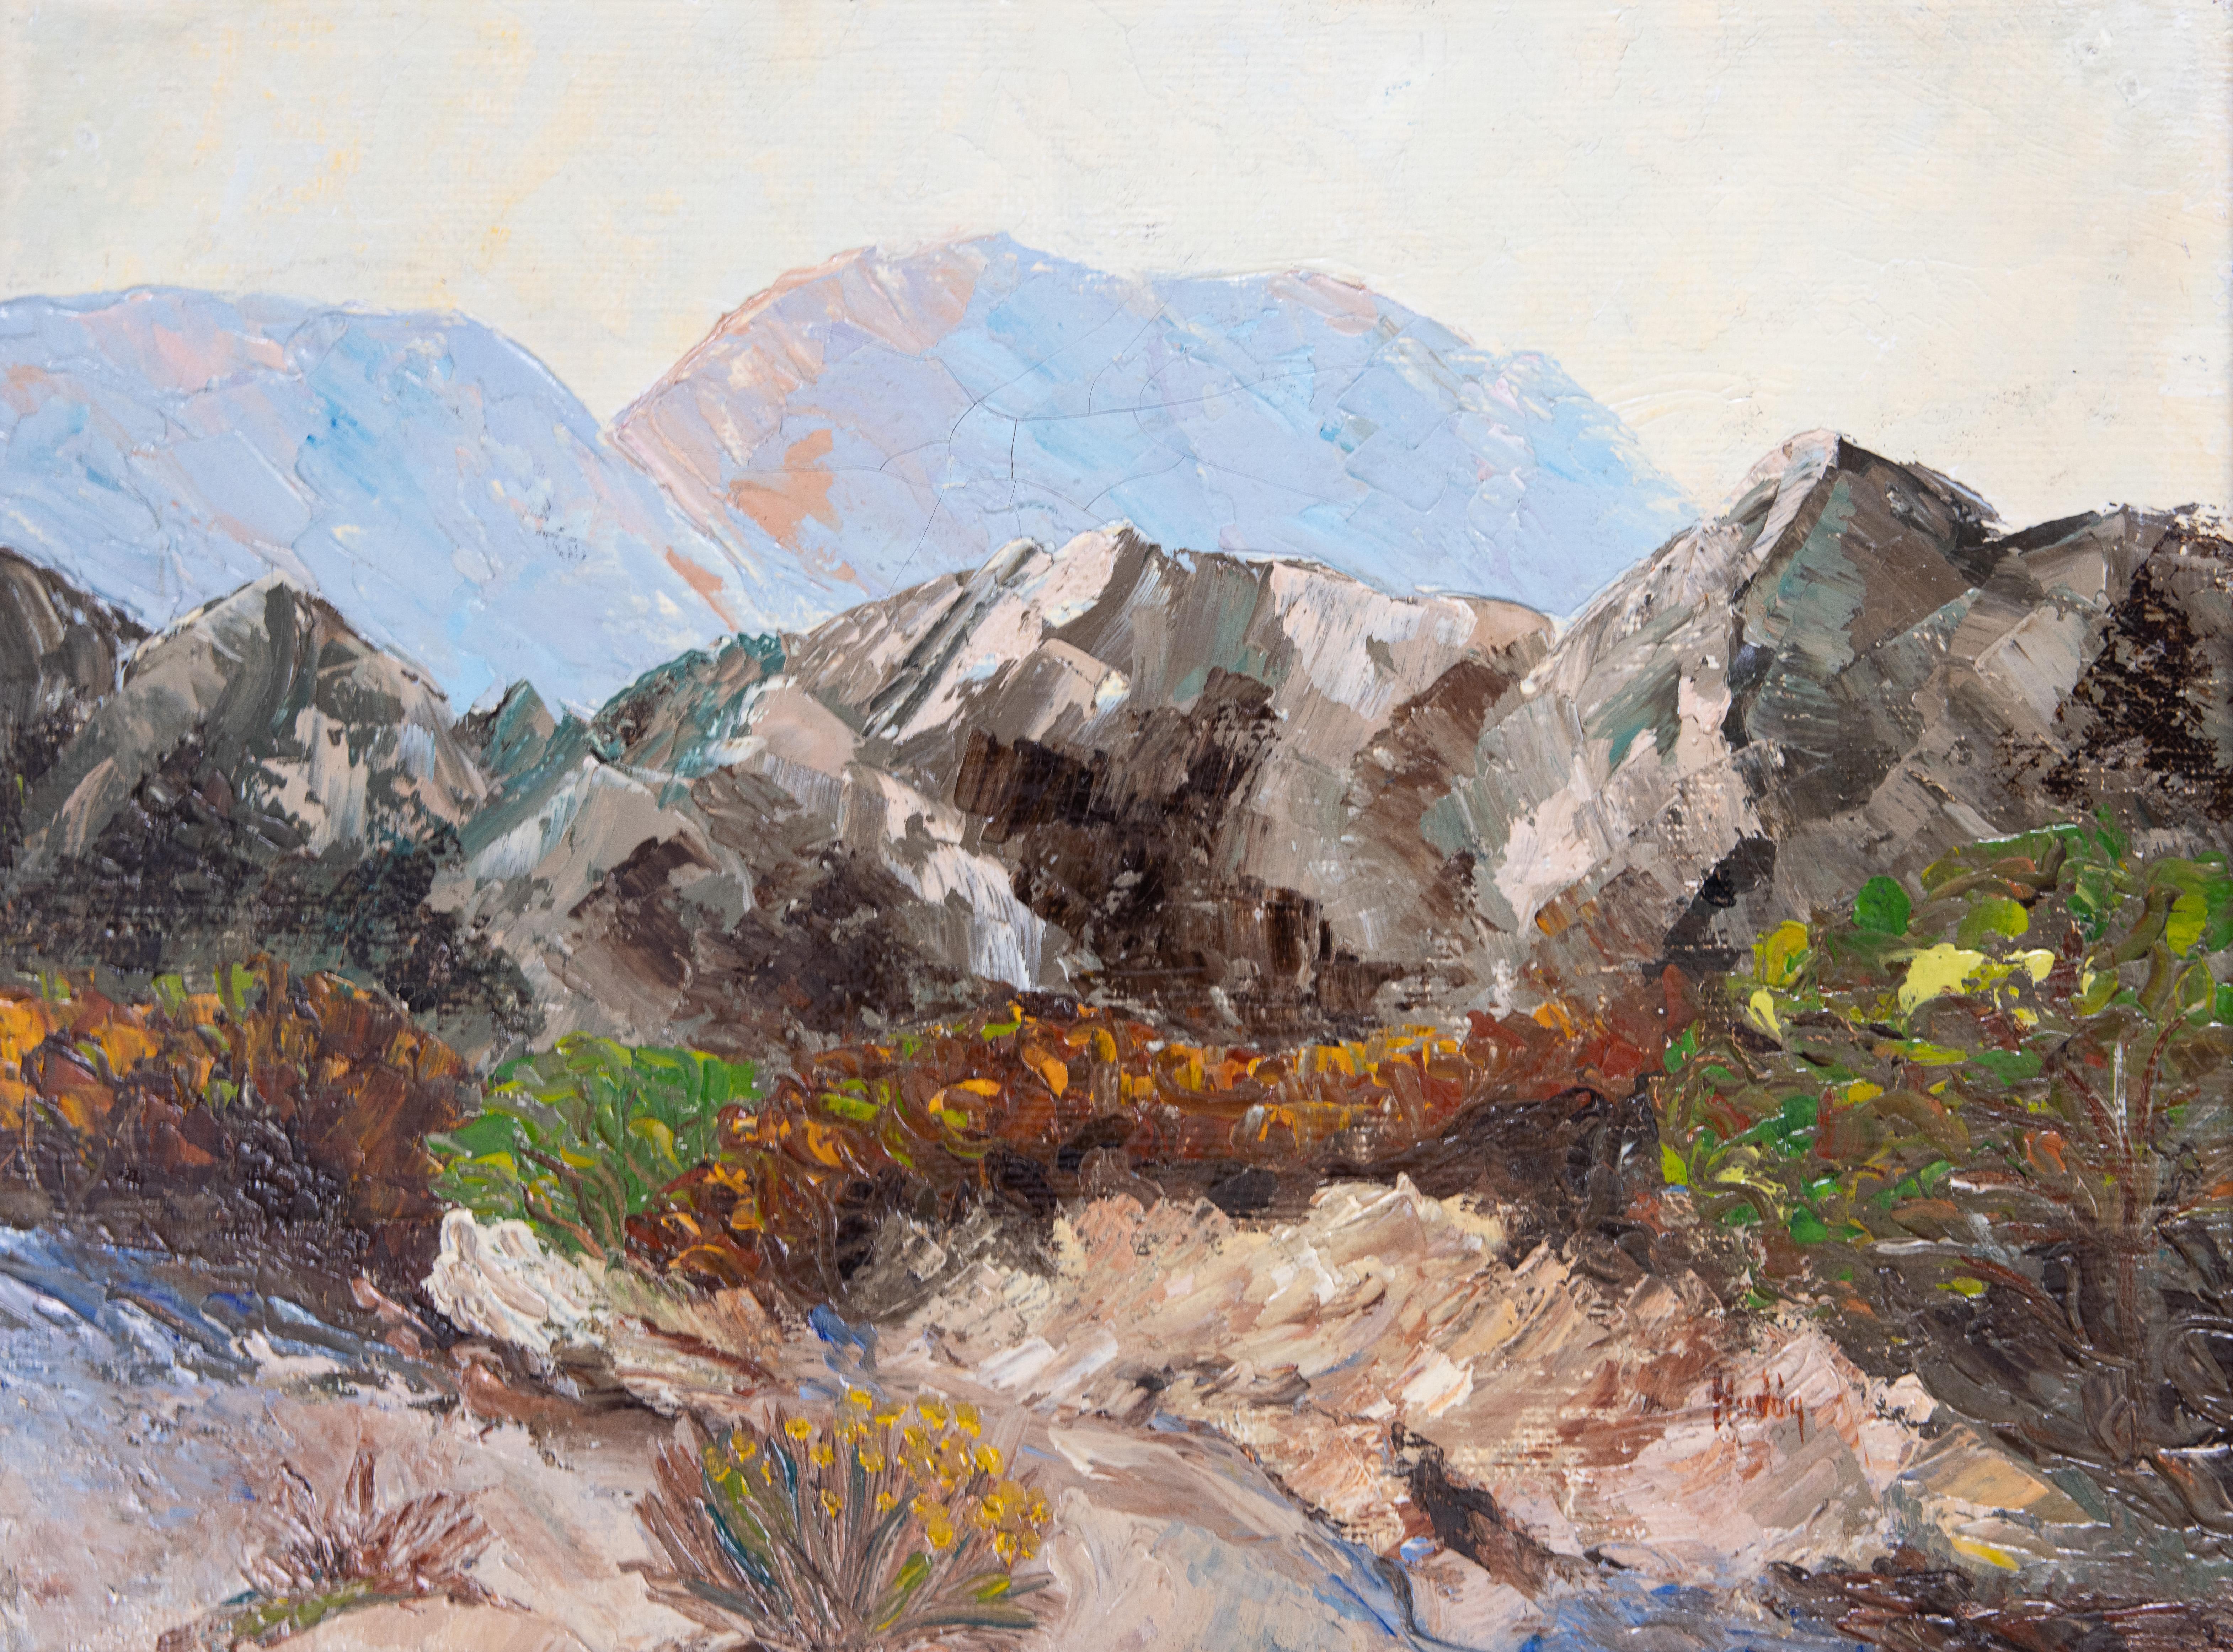 Brillant paysage de falaises rocheuses du sud-ouest, exécuté au couteau, vers 1900-1949. Sous les falaises se trouvent des fleurs éclatantes, évocatrices du sud-ouest américain. Au loin, on aperçoit des montagnes d'un bleu pâle. Signé en bas à